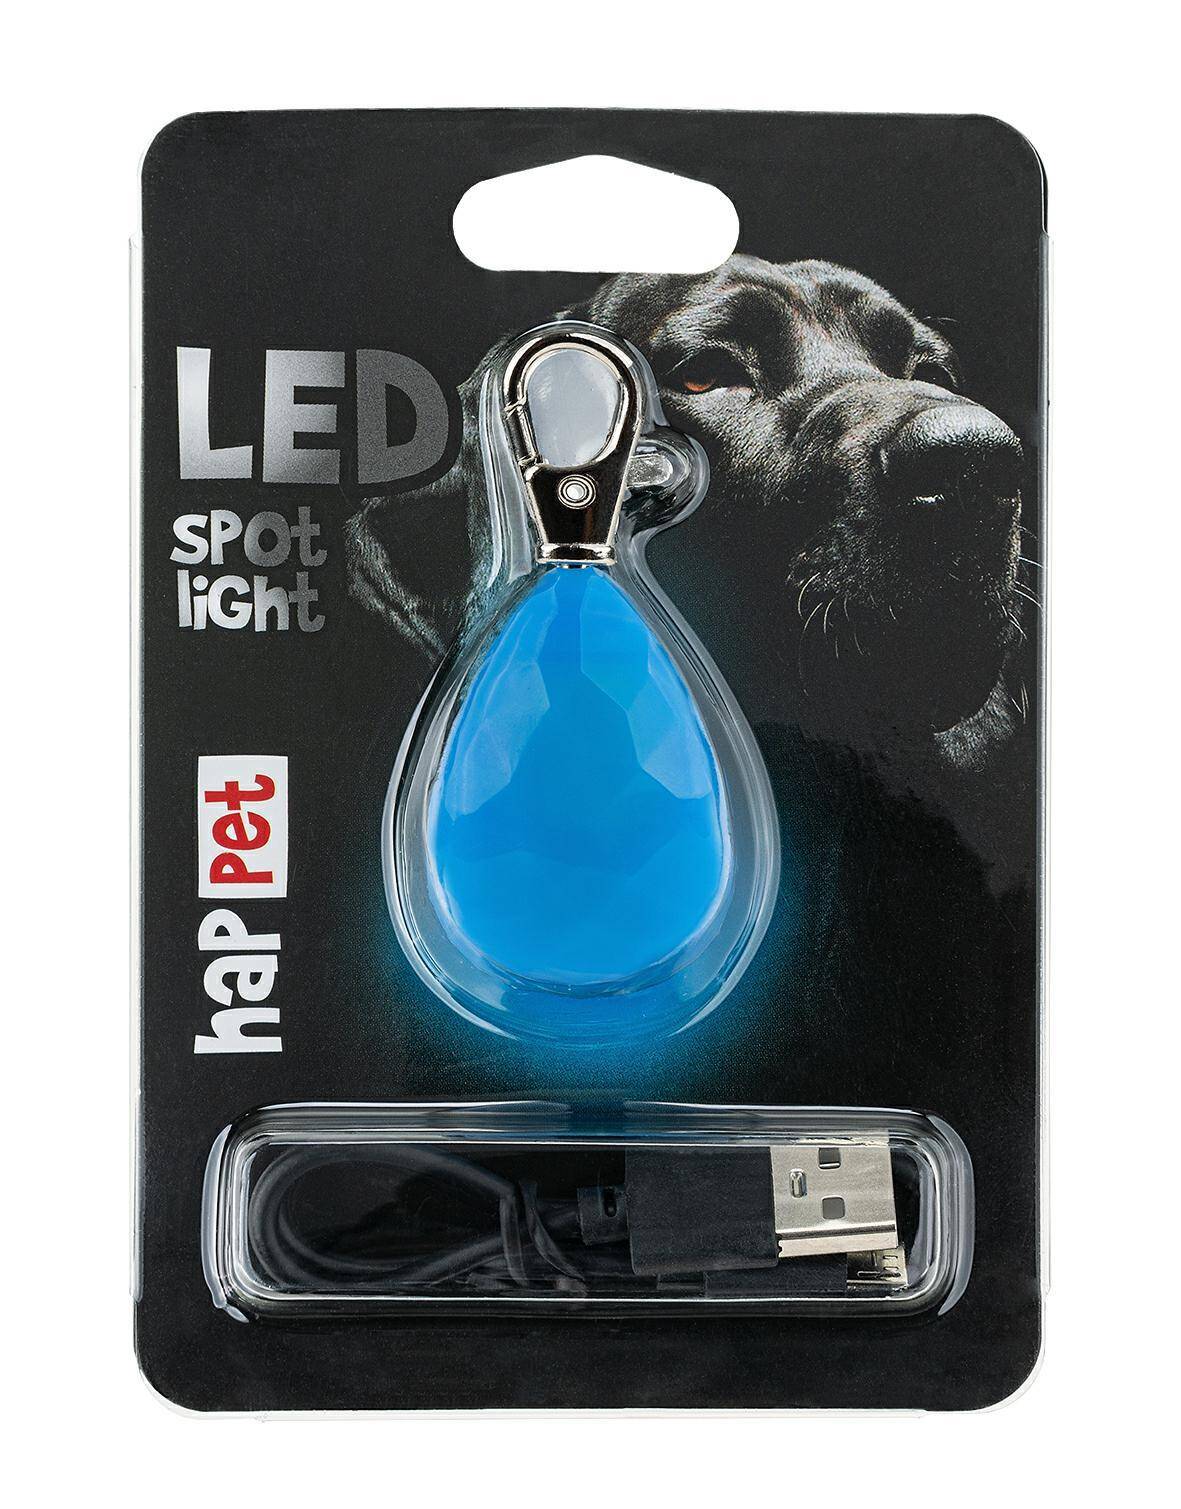 LED spot light blue diamond